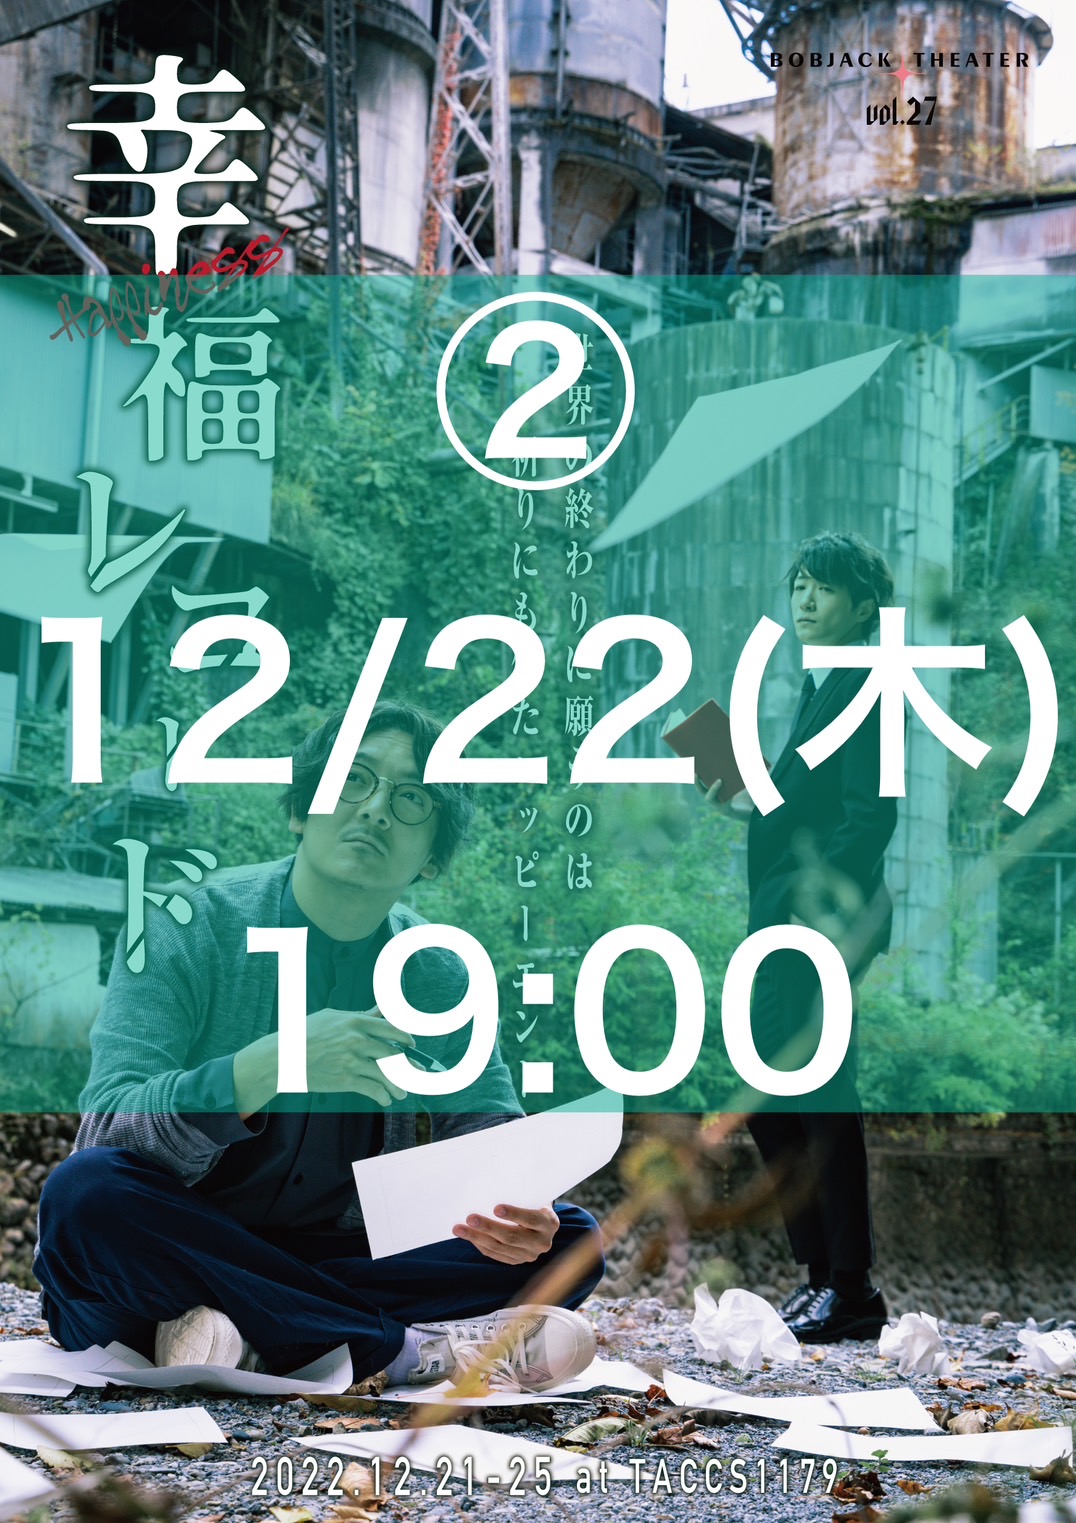 _02【 12/22(木)19時 】Bobjack Theater『幸福レコード2022』